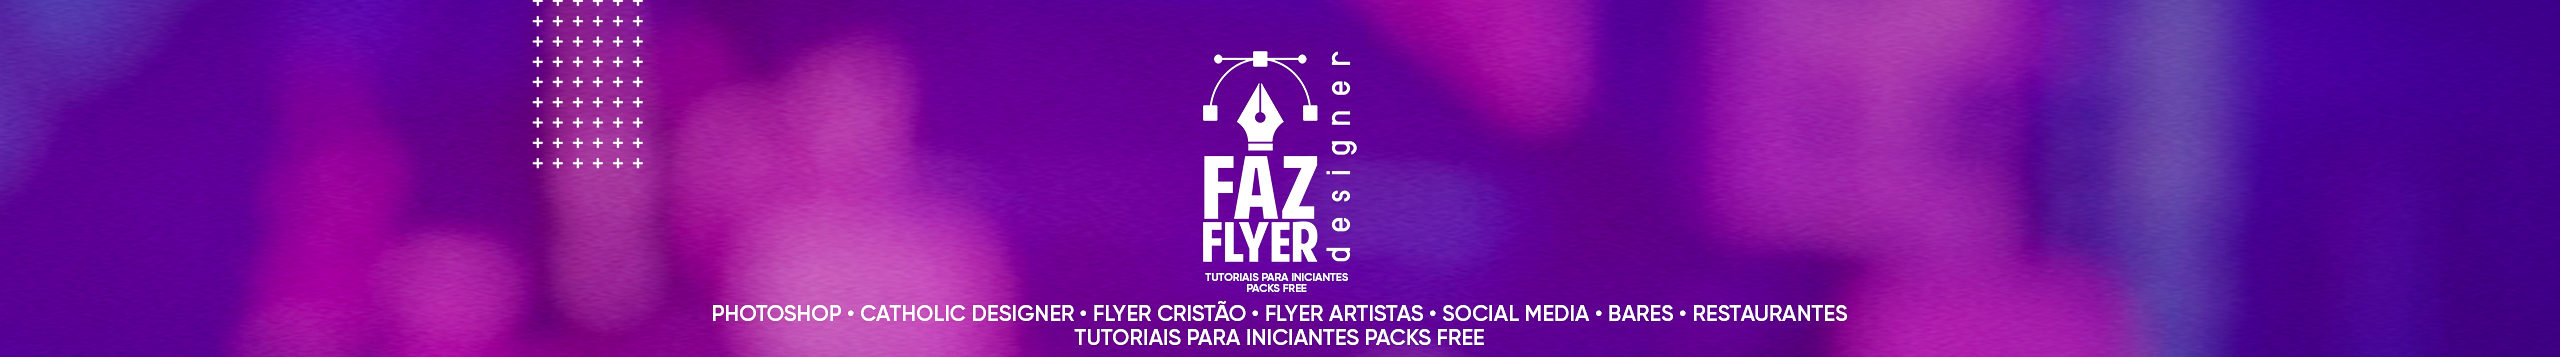 Tiago Faz Flyer's profile banner